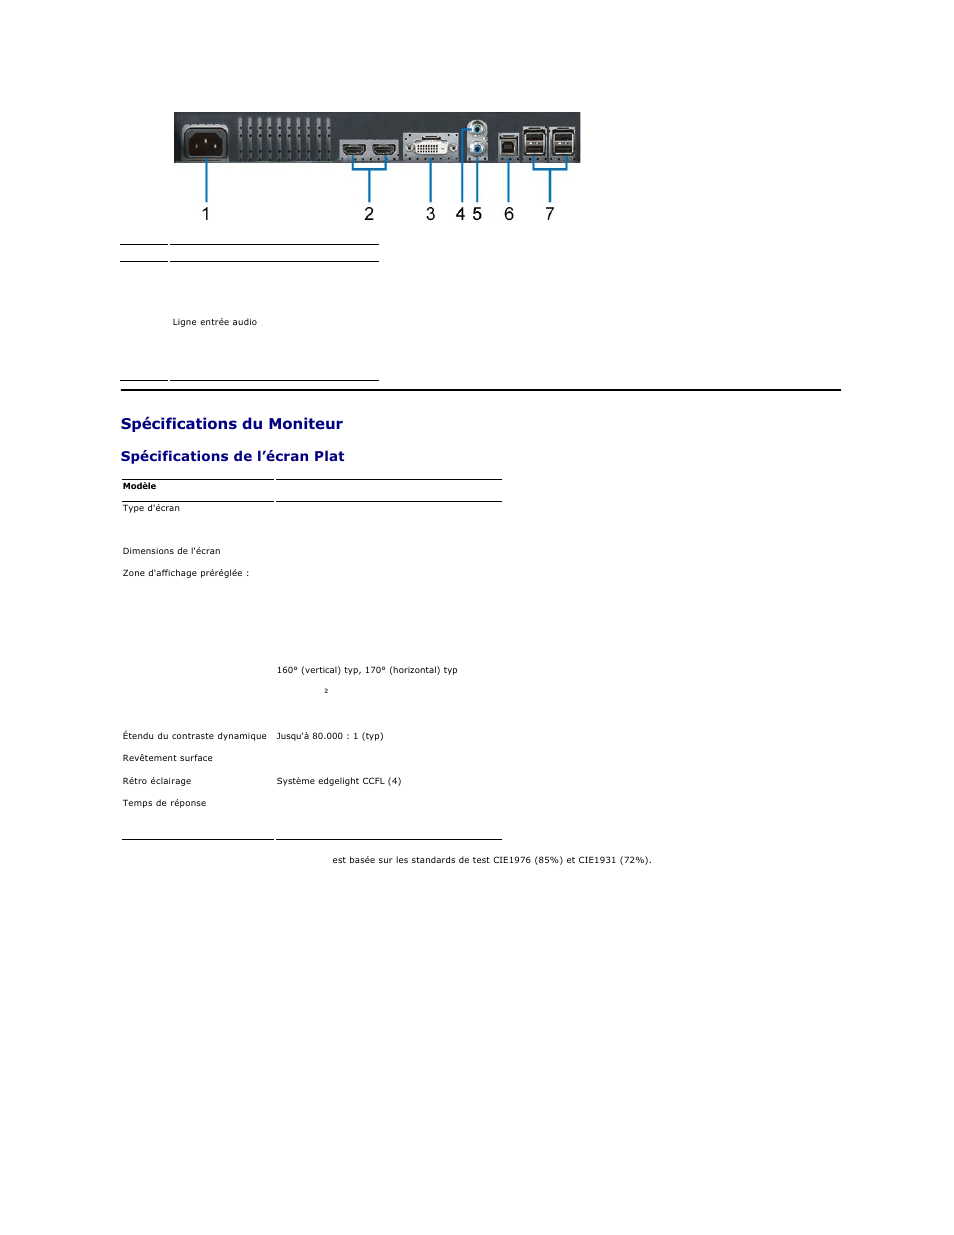 Spécifications du moniteur, Spécifications de l’écran plat | Dell AW2210 Monitor Manuel d'utilisation | Page 5 / 31